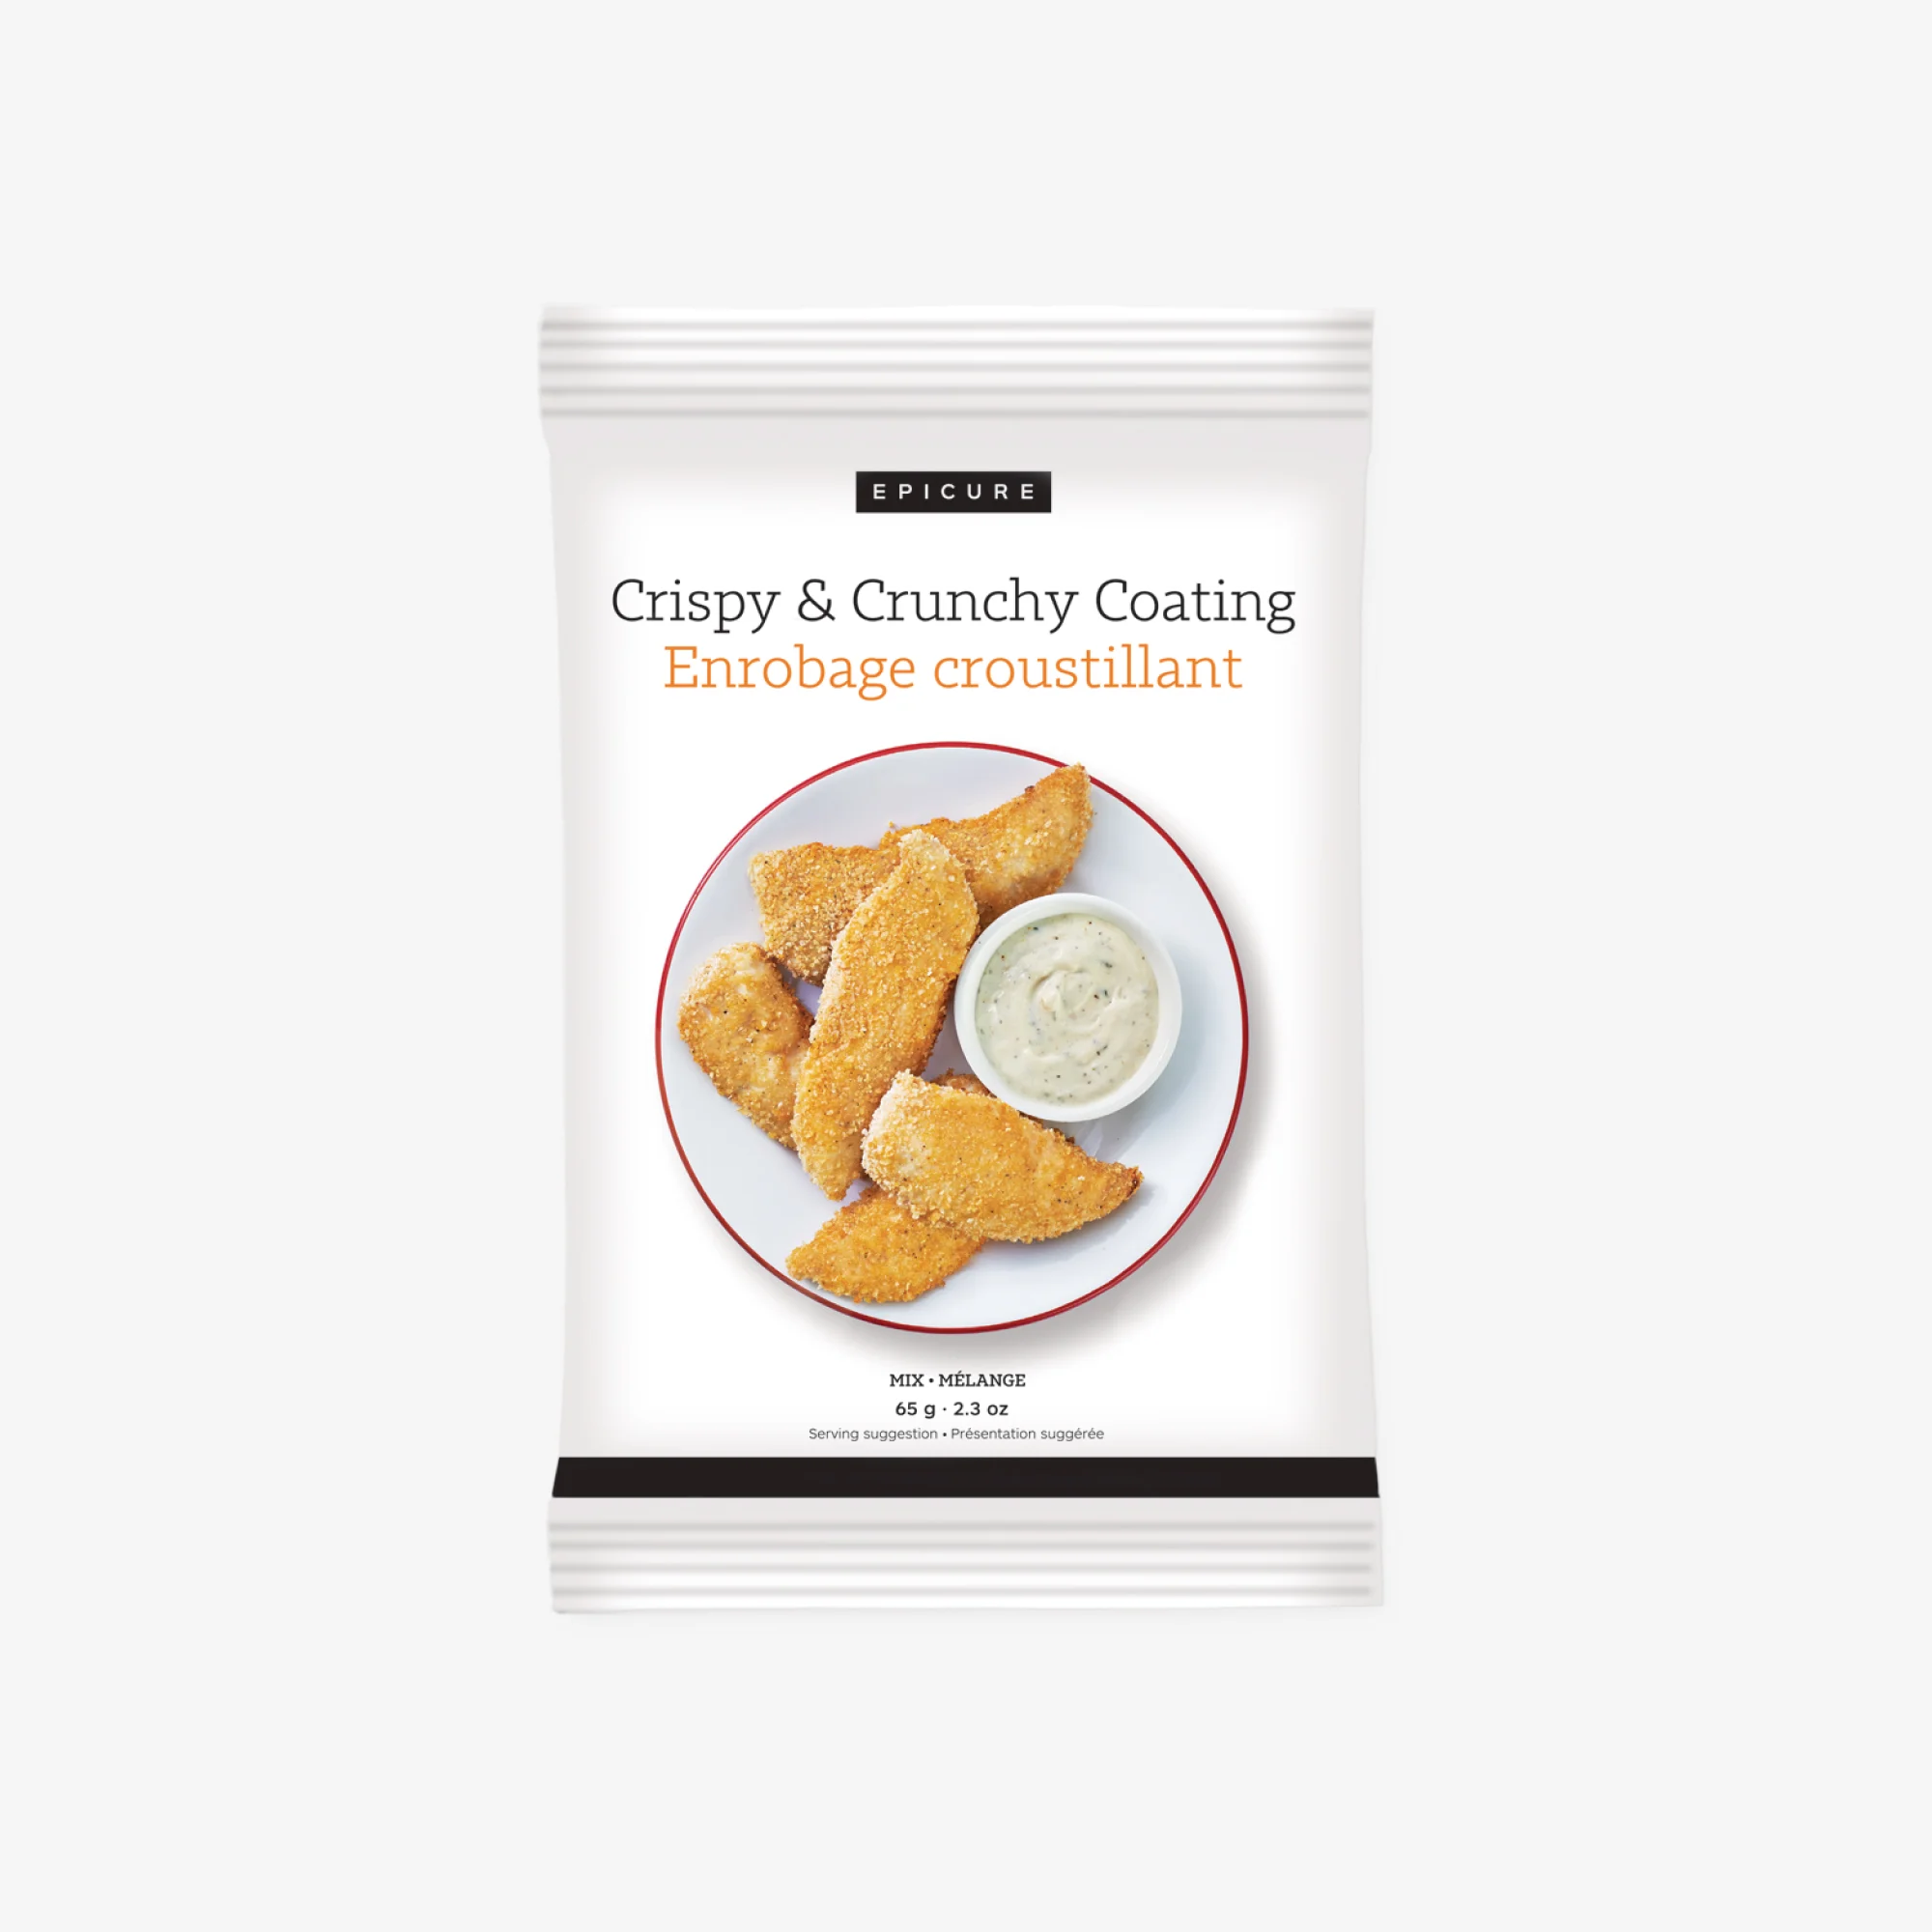 Crispy & Crunchy Coating (Pkg of 3)